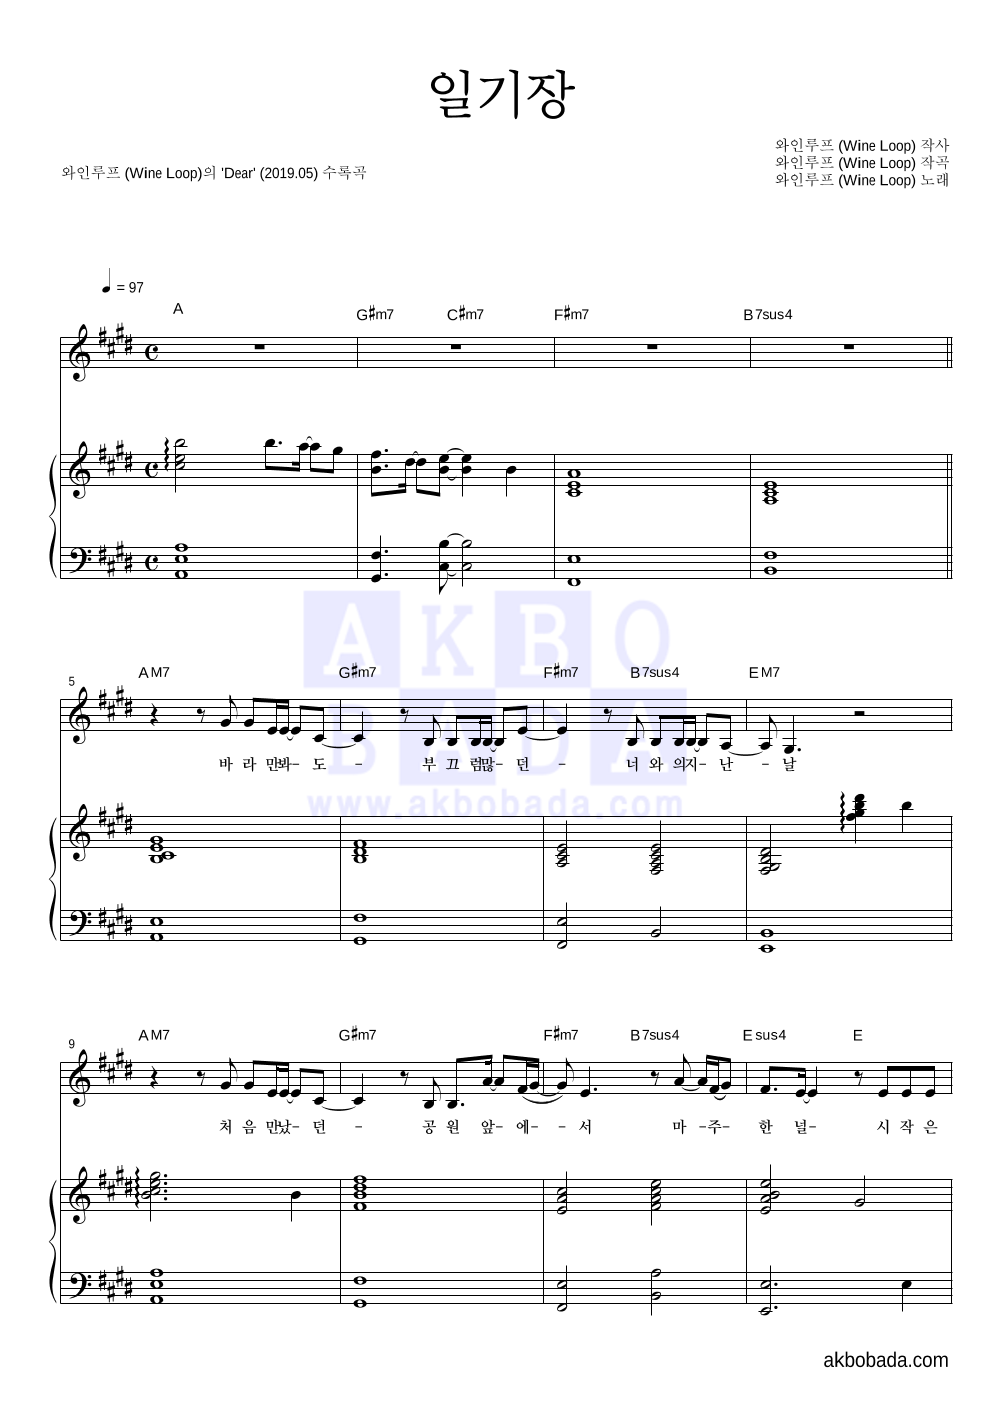 와인루프 - 일기장 피아노 3단 악보 